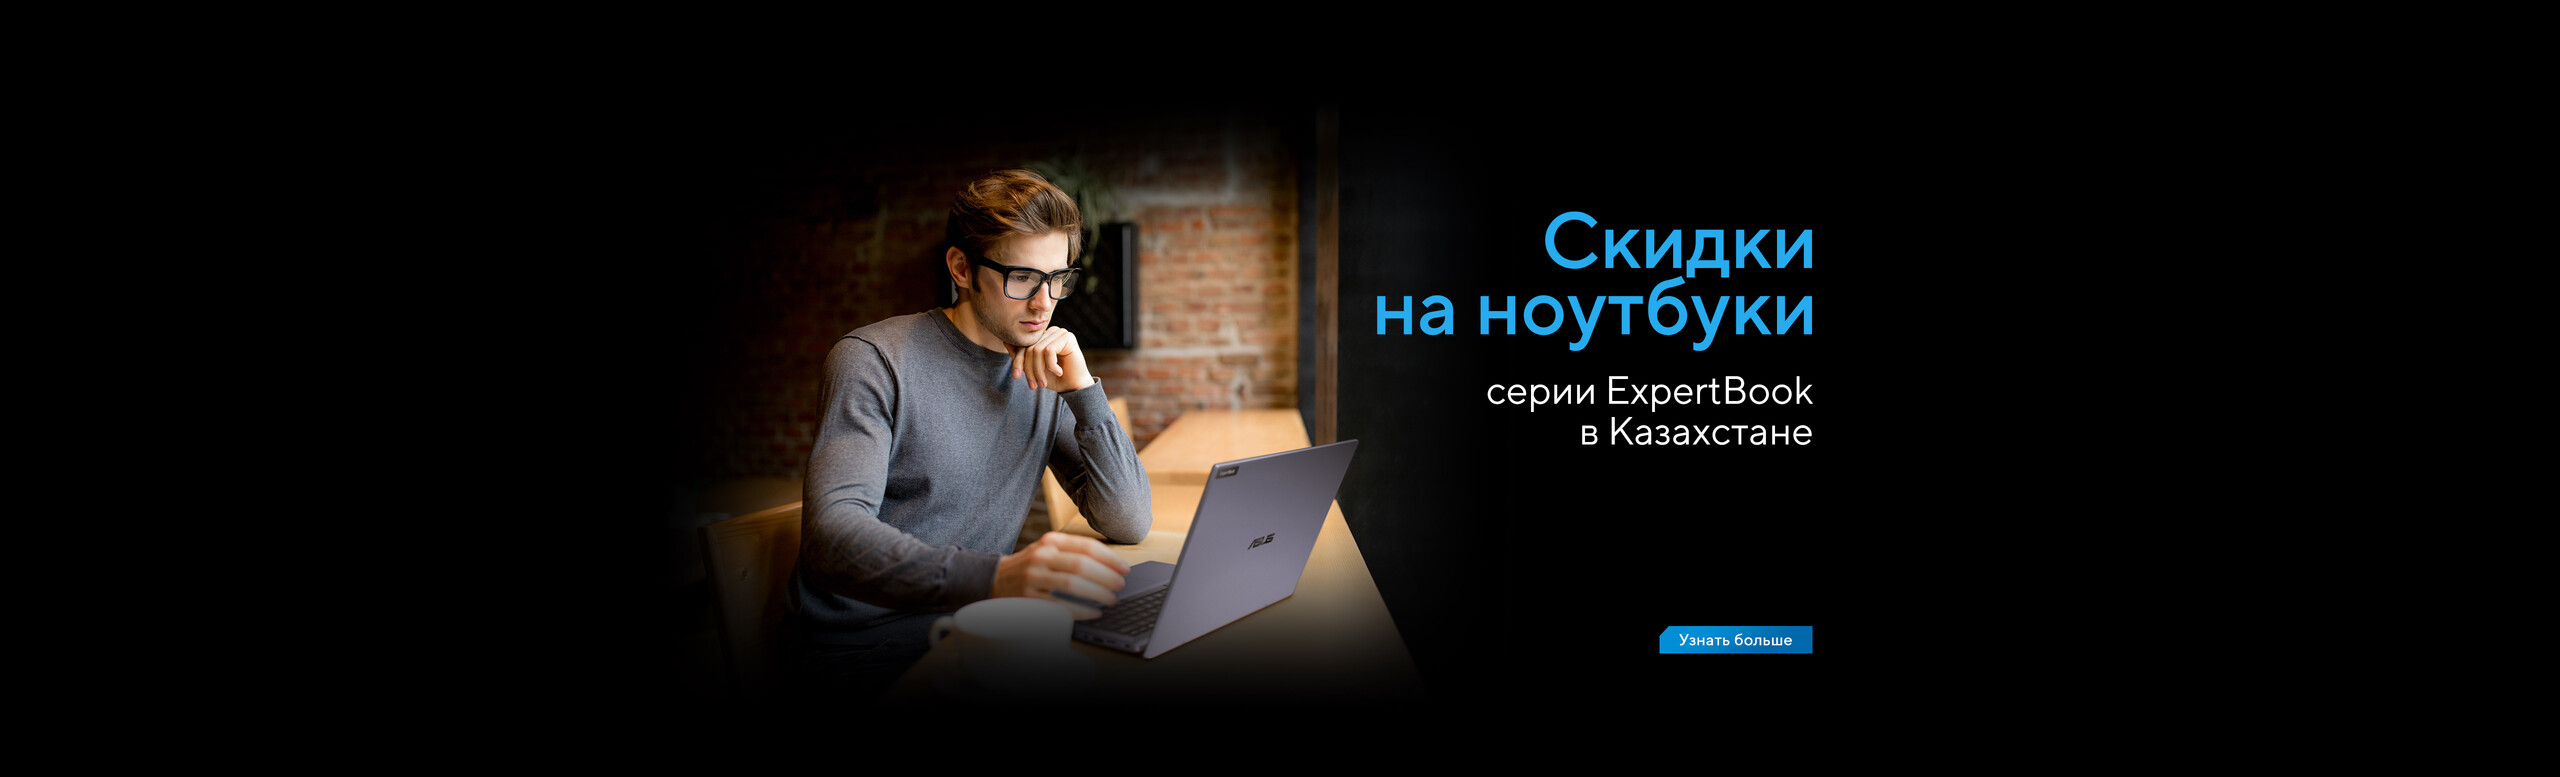 Скидки на ноутбуки серии ExpertBook в Казахстане